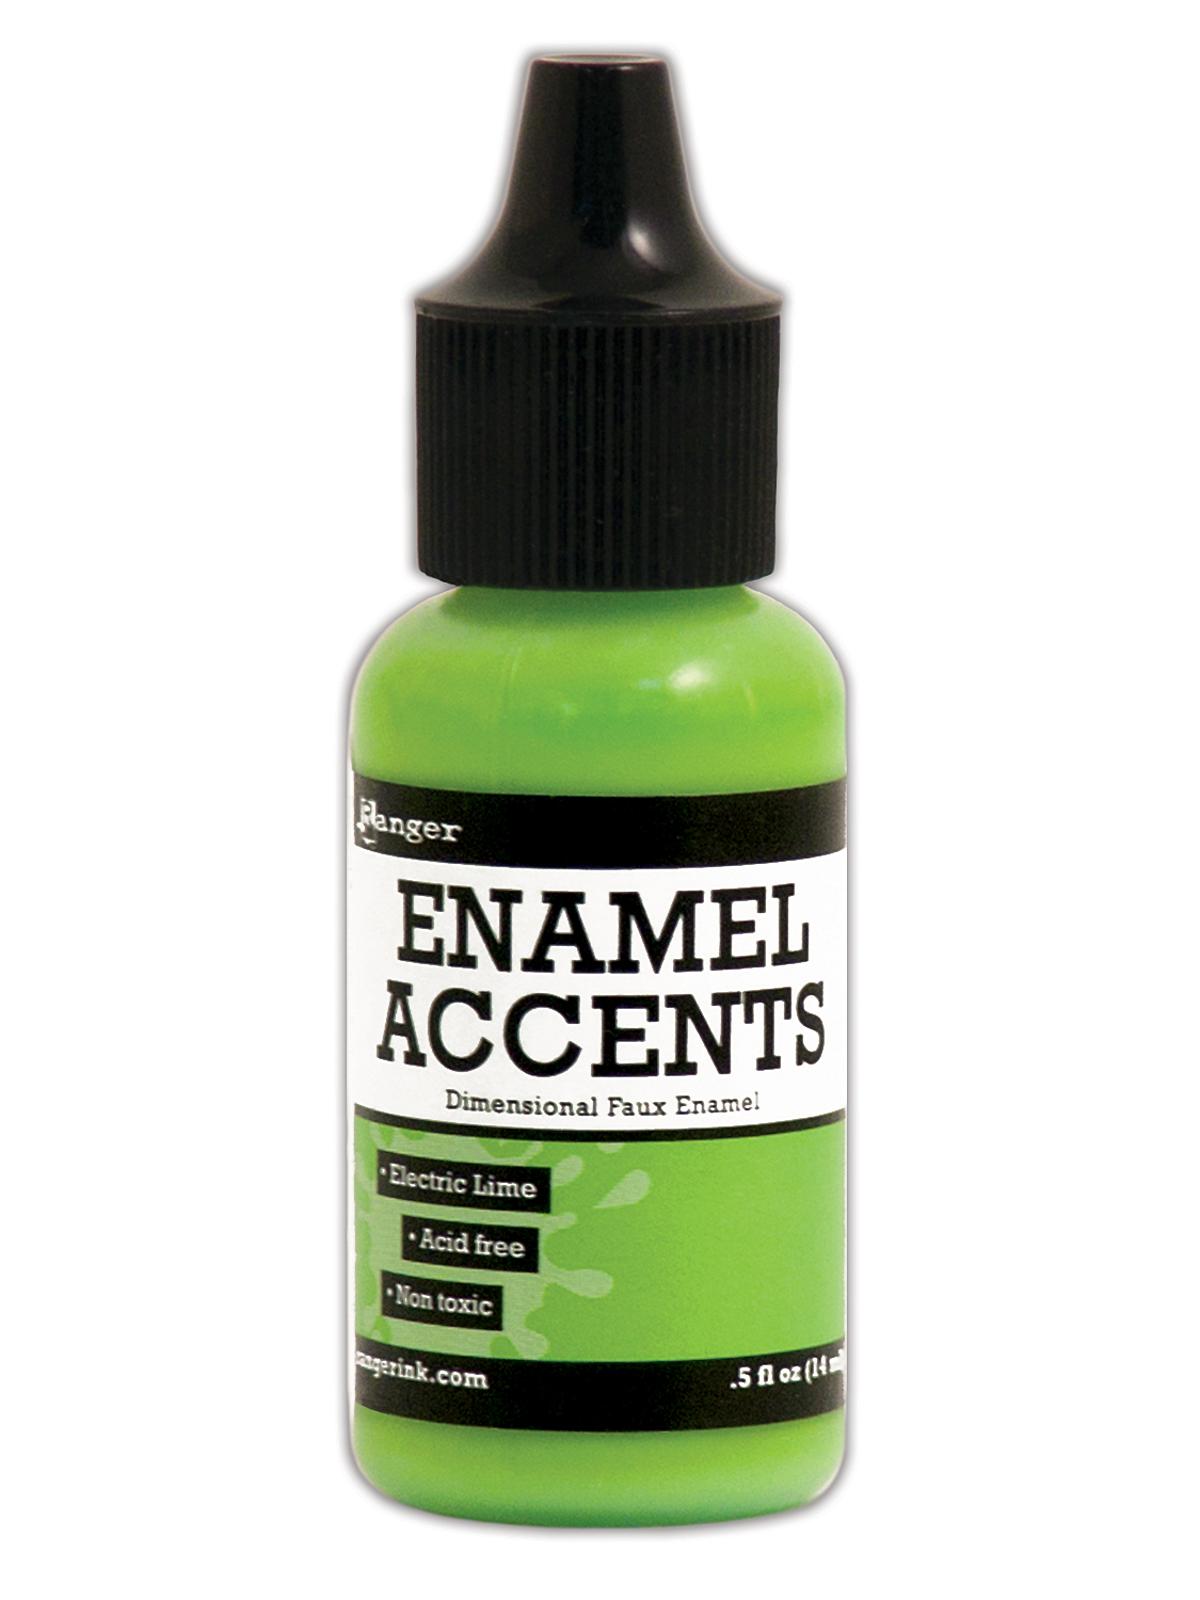 Enamel Accents Electric Lime 1 2 Oz. Bottle